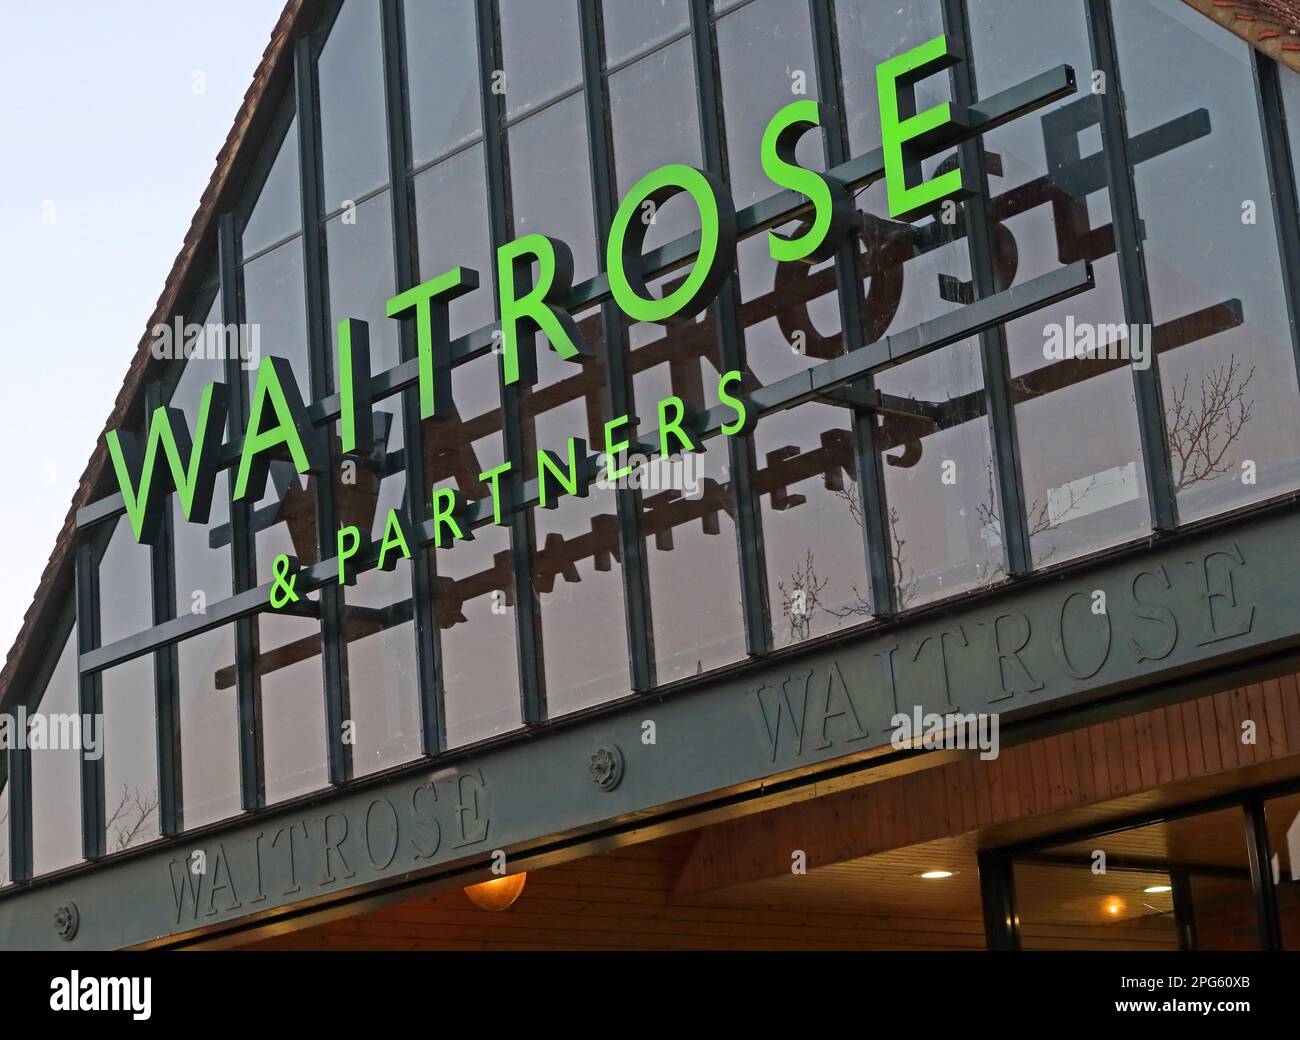 Waitrose et Partners supermarché chaîne alimentaire, 11-14 Bridge St, Godalming, Surrey, Angleterre, ROYAUME-UNI, GU7 1HY Banque D'Images